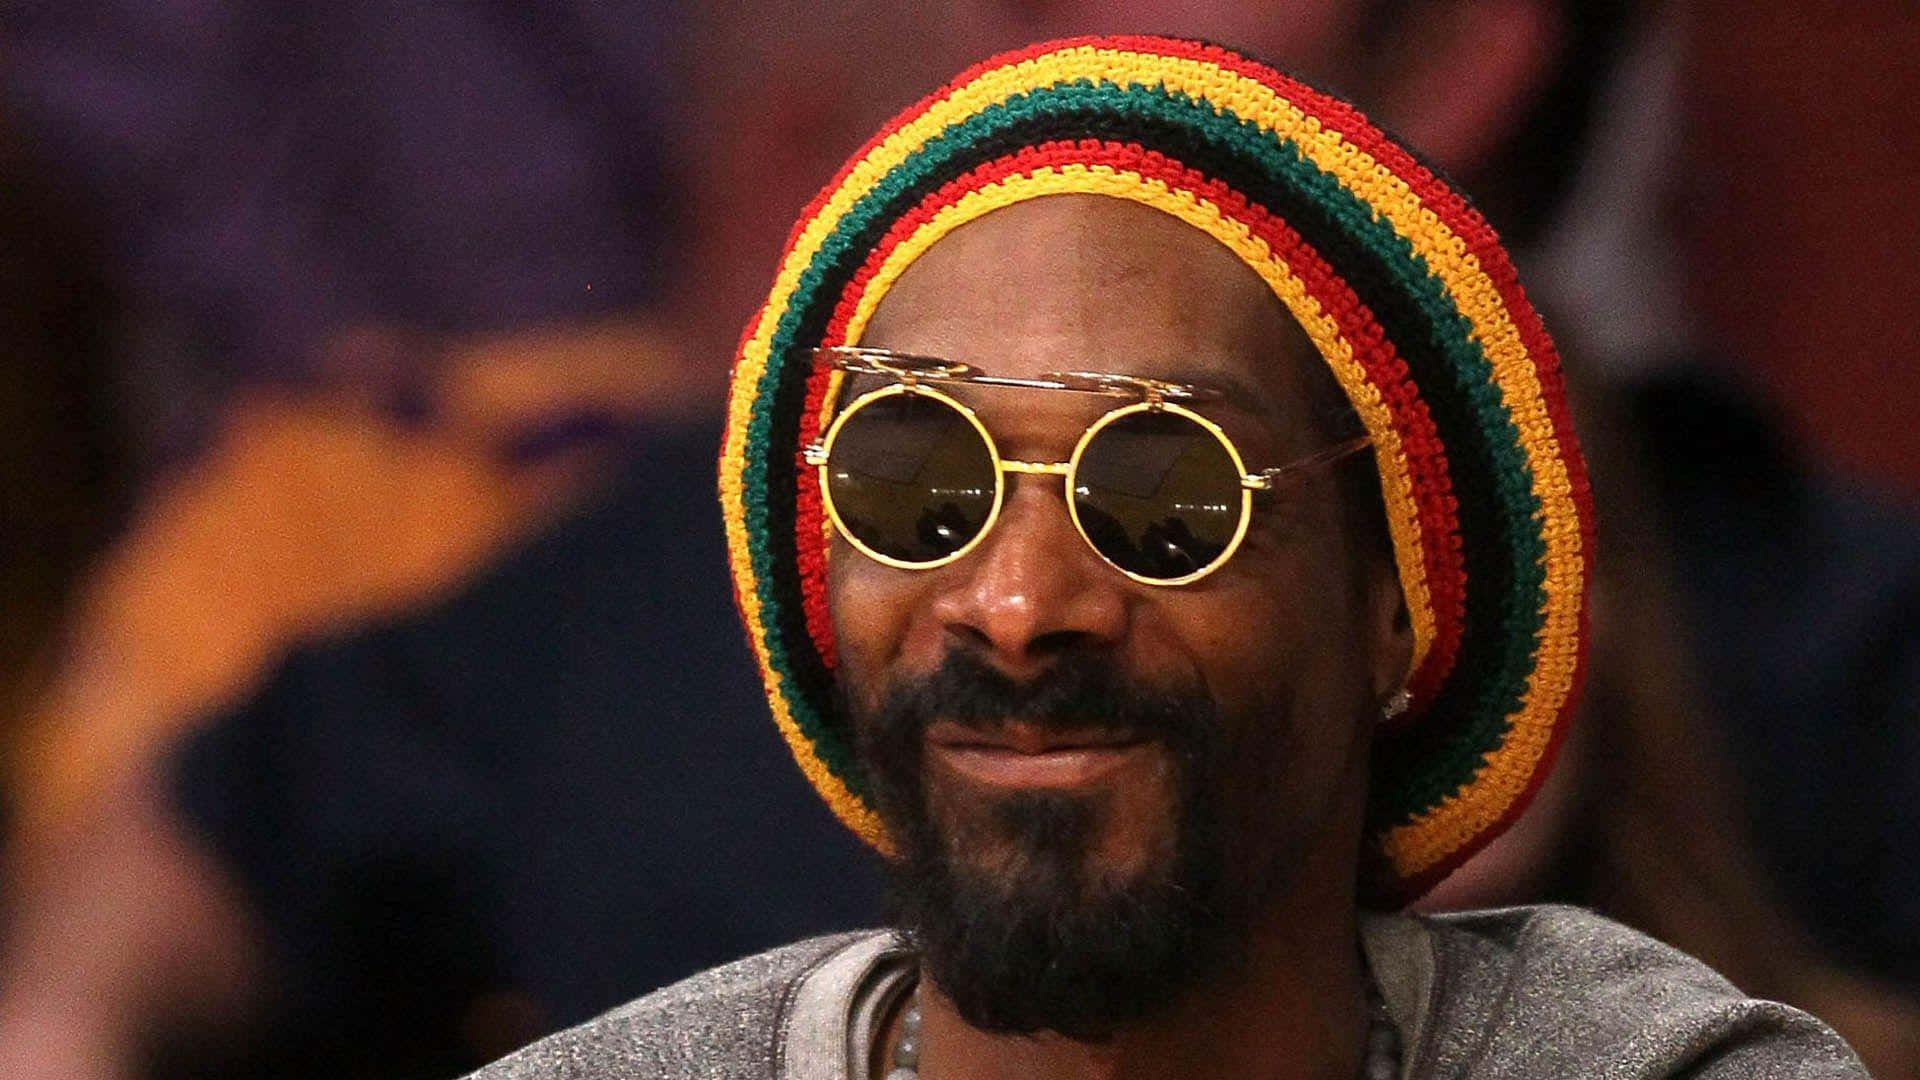 Unge Snoop Dogg ser cool ud med hans signatur solbriller. Wallpaper